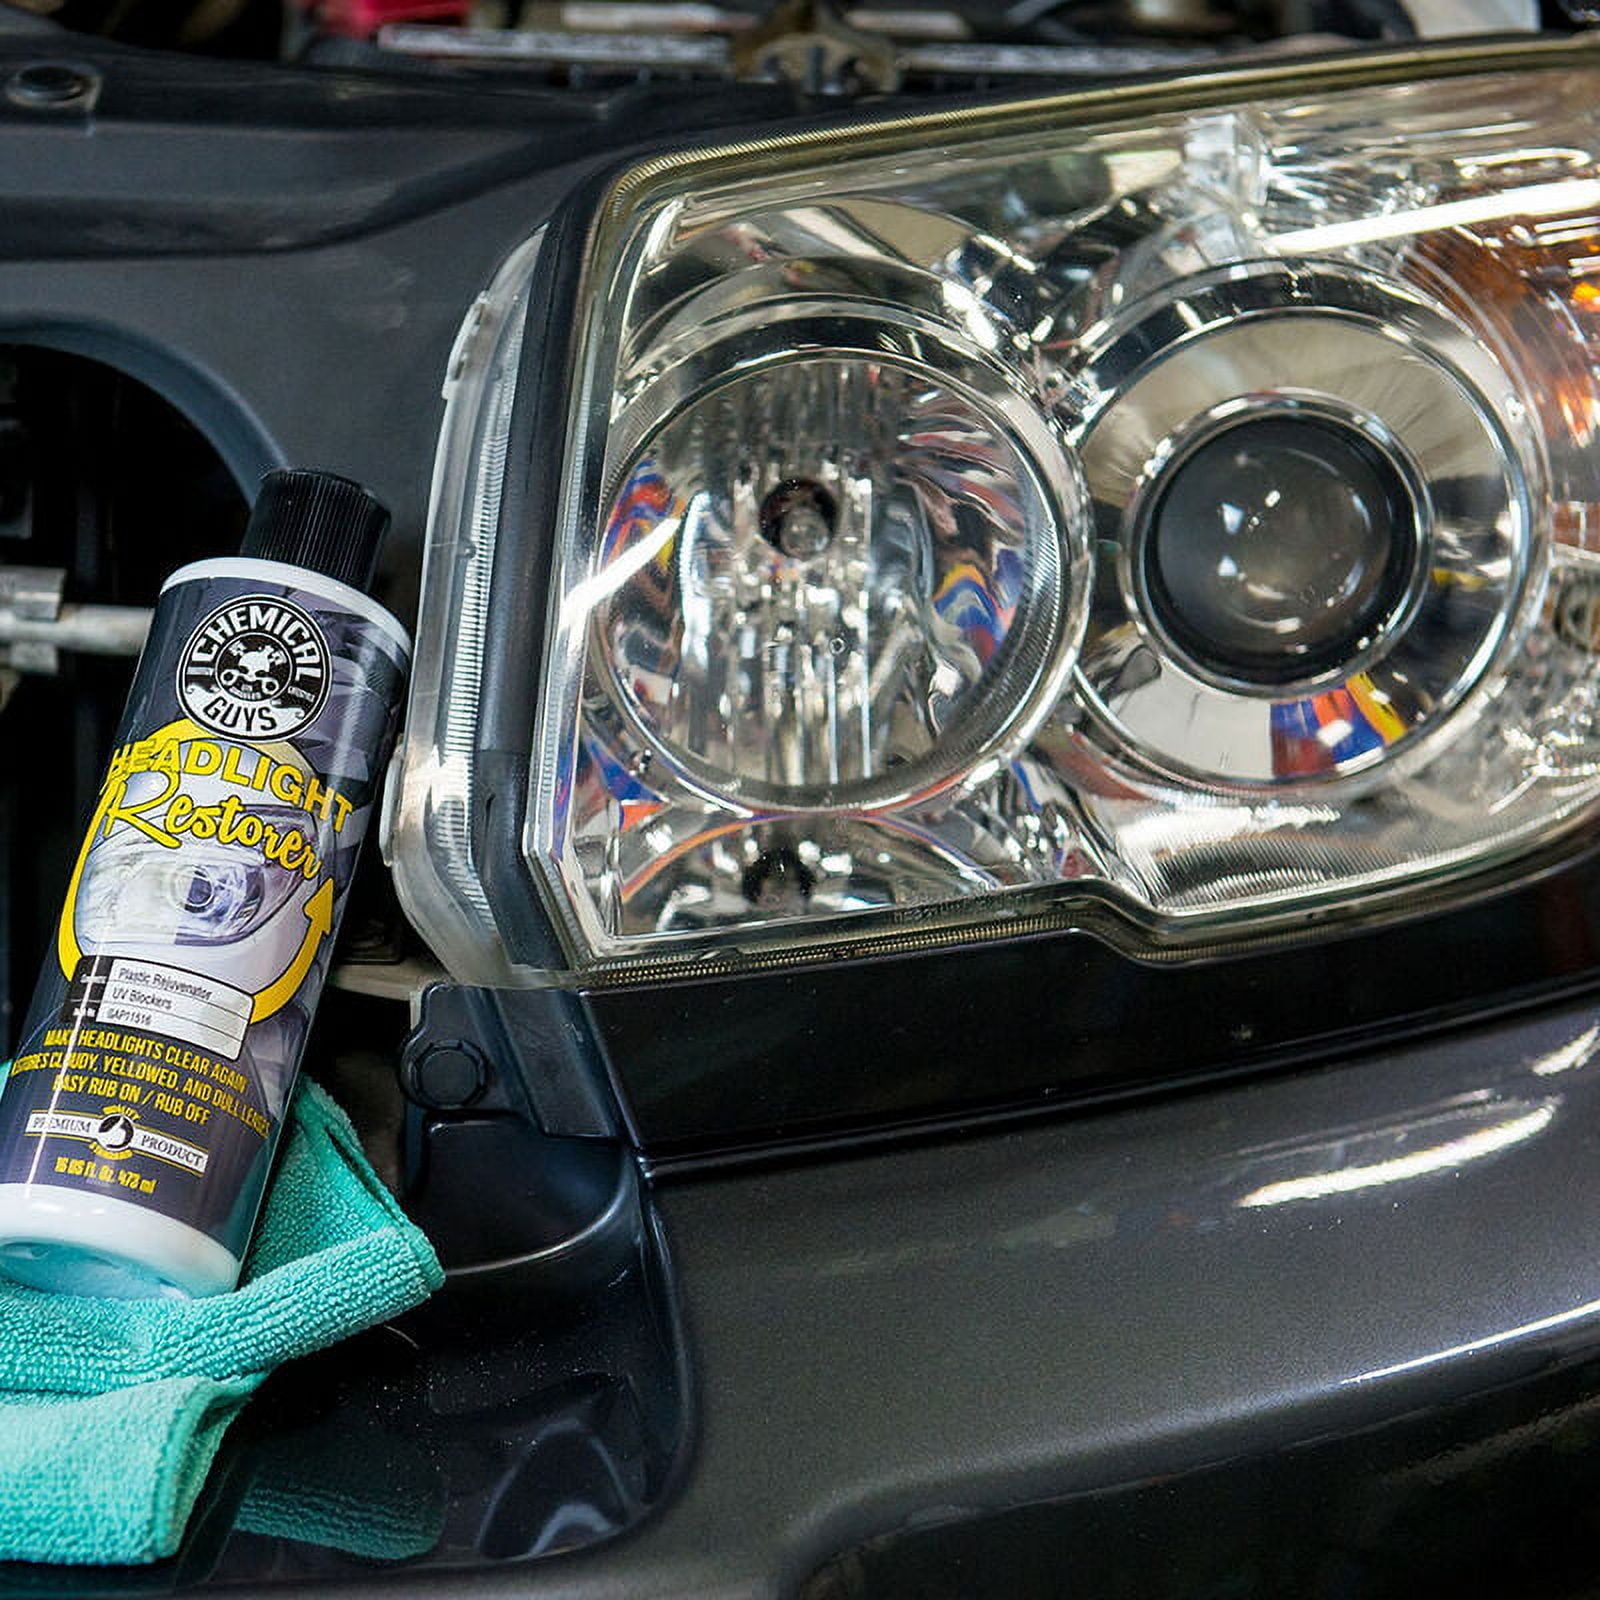 Jual Chemical Guys Headlight Restorer 473ml Pembersih Lampu Mobil